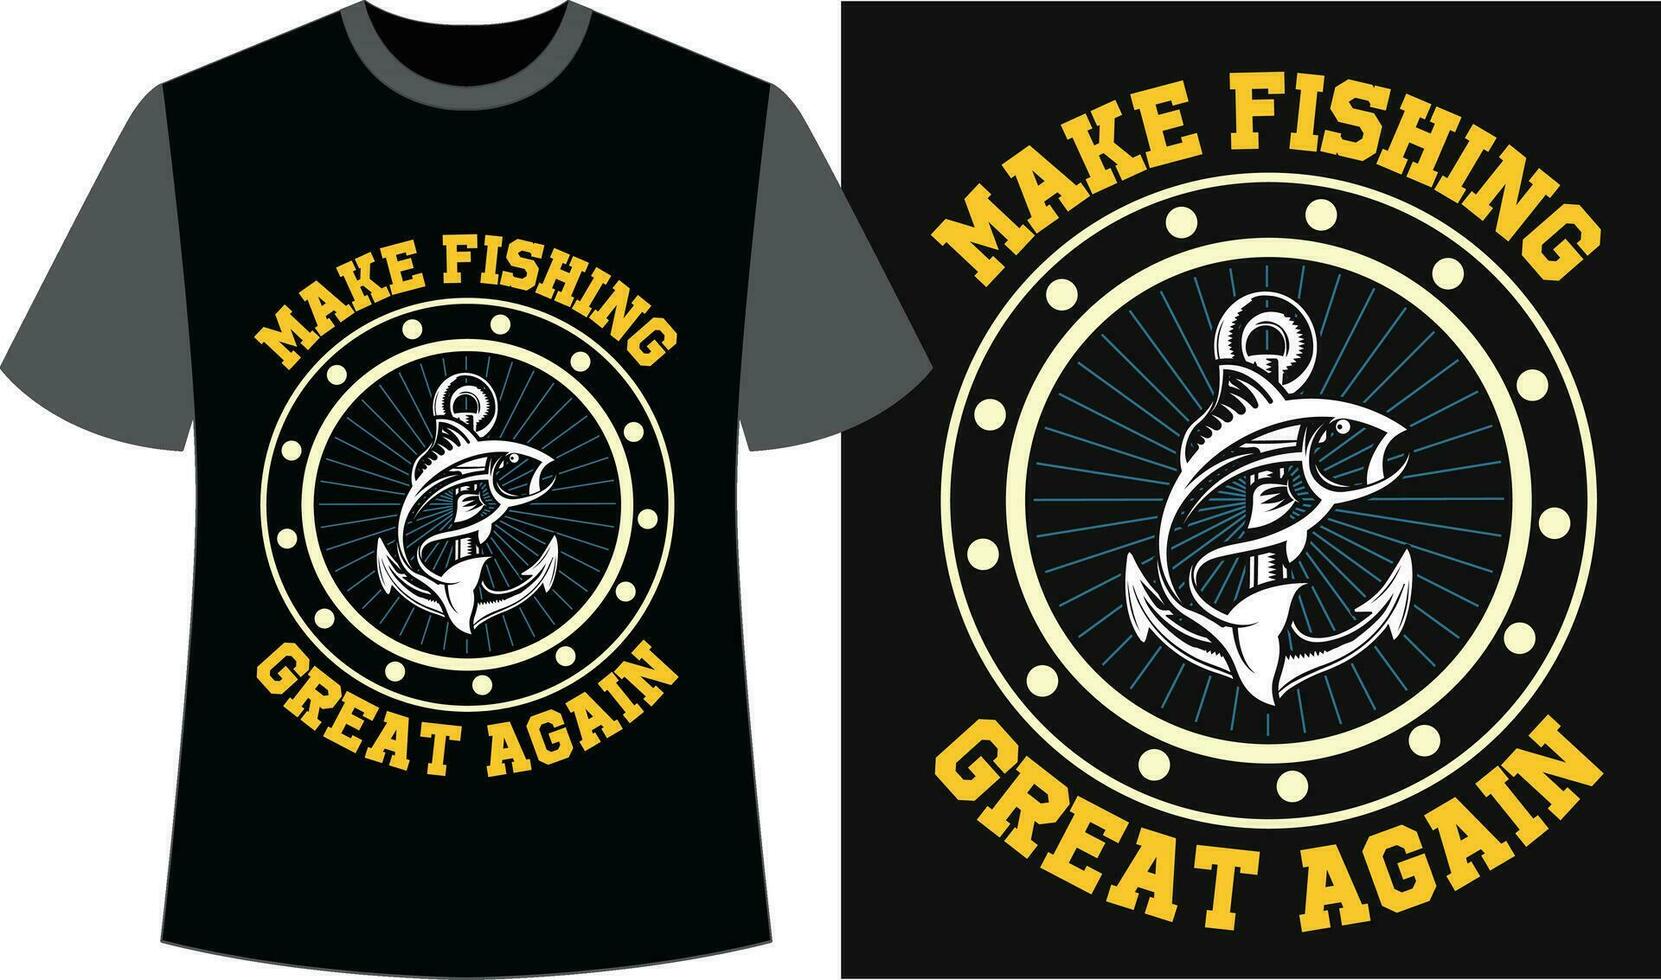 pesca tipografia maglietta design. pesca divertente maglietta. pesca vettore design